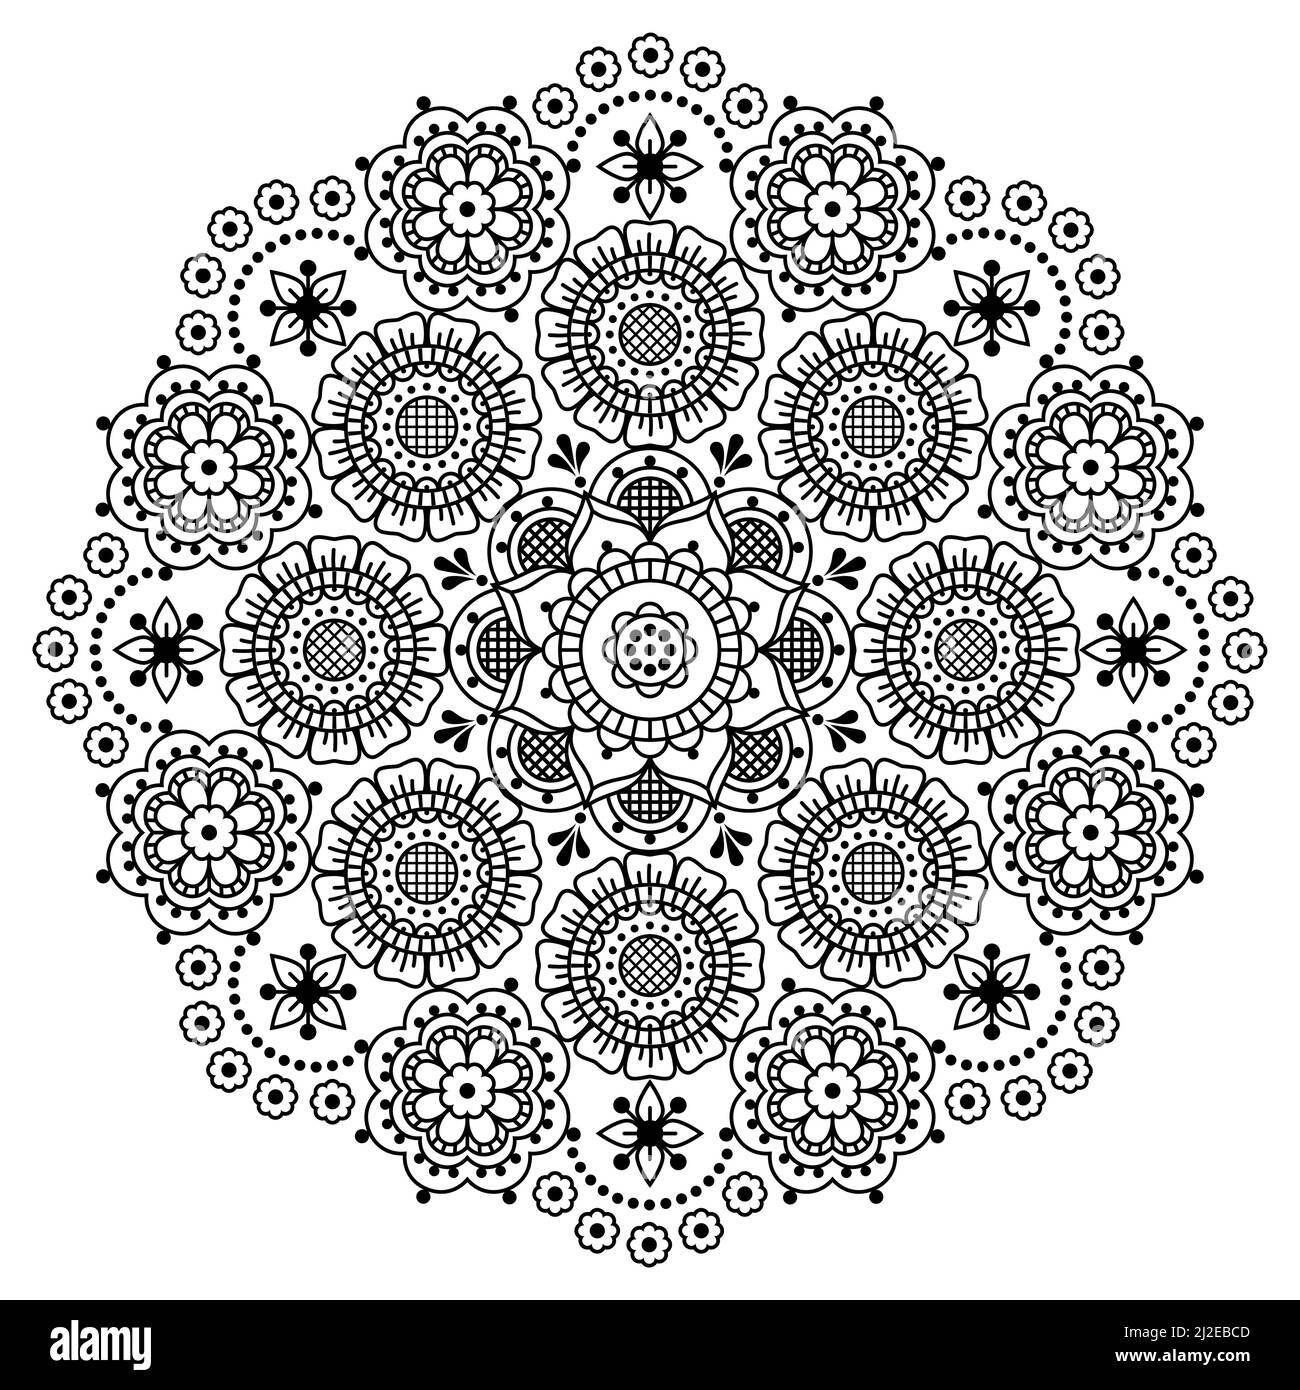 Skandinavische Mandala Vektor-Stickerei Folk Art Stil, niedliche schwarz-weiß runden Design mit Blumen perfekt für Grußkarte oder Hochzeit Einladung Stock Vektor